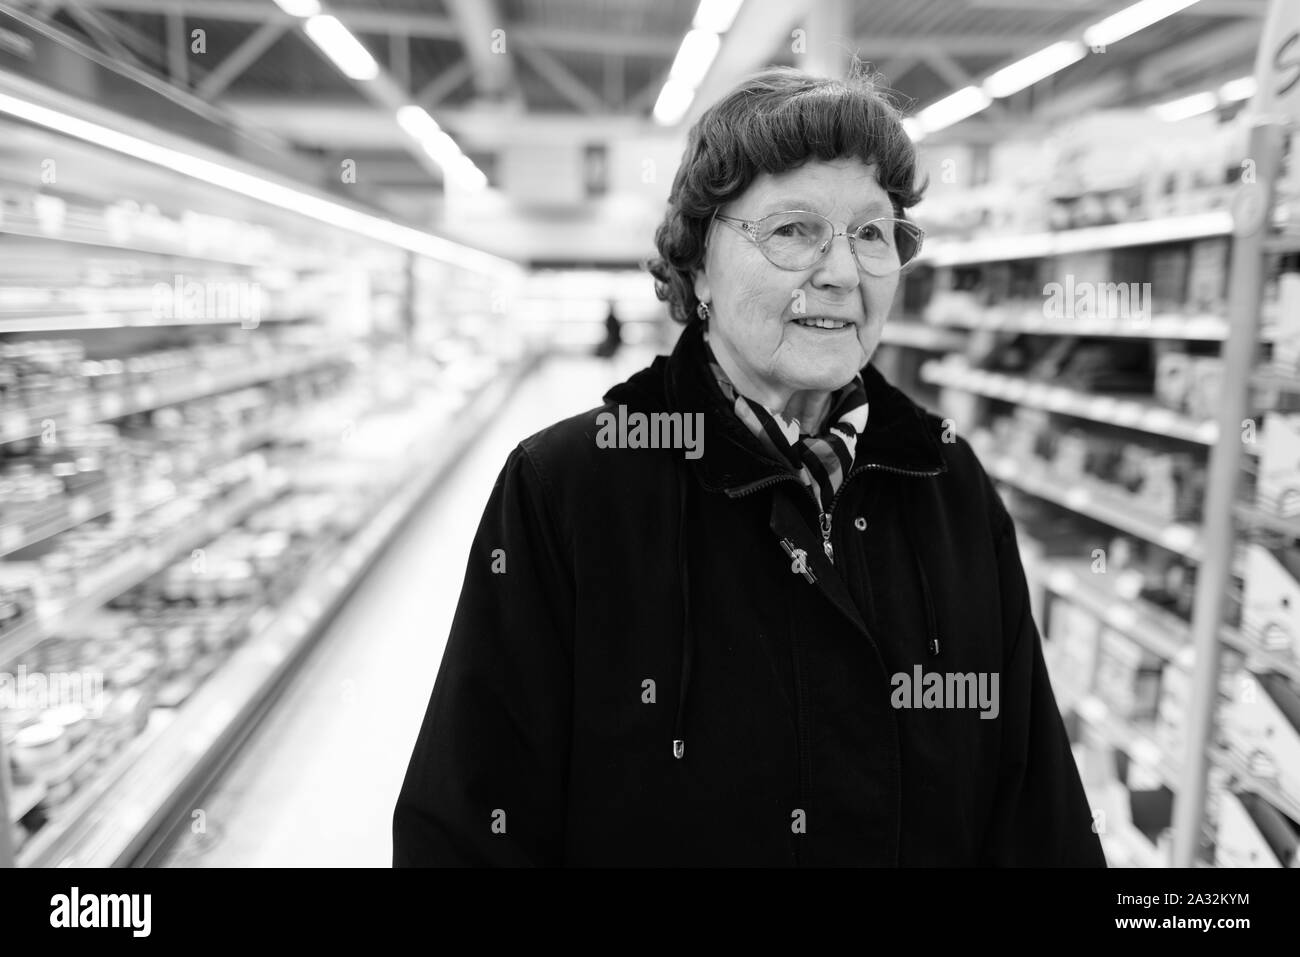 Schöne ältere Frau, die Einkaufen im Supermarkt Stockfoto